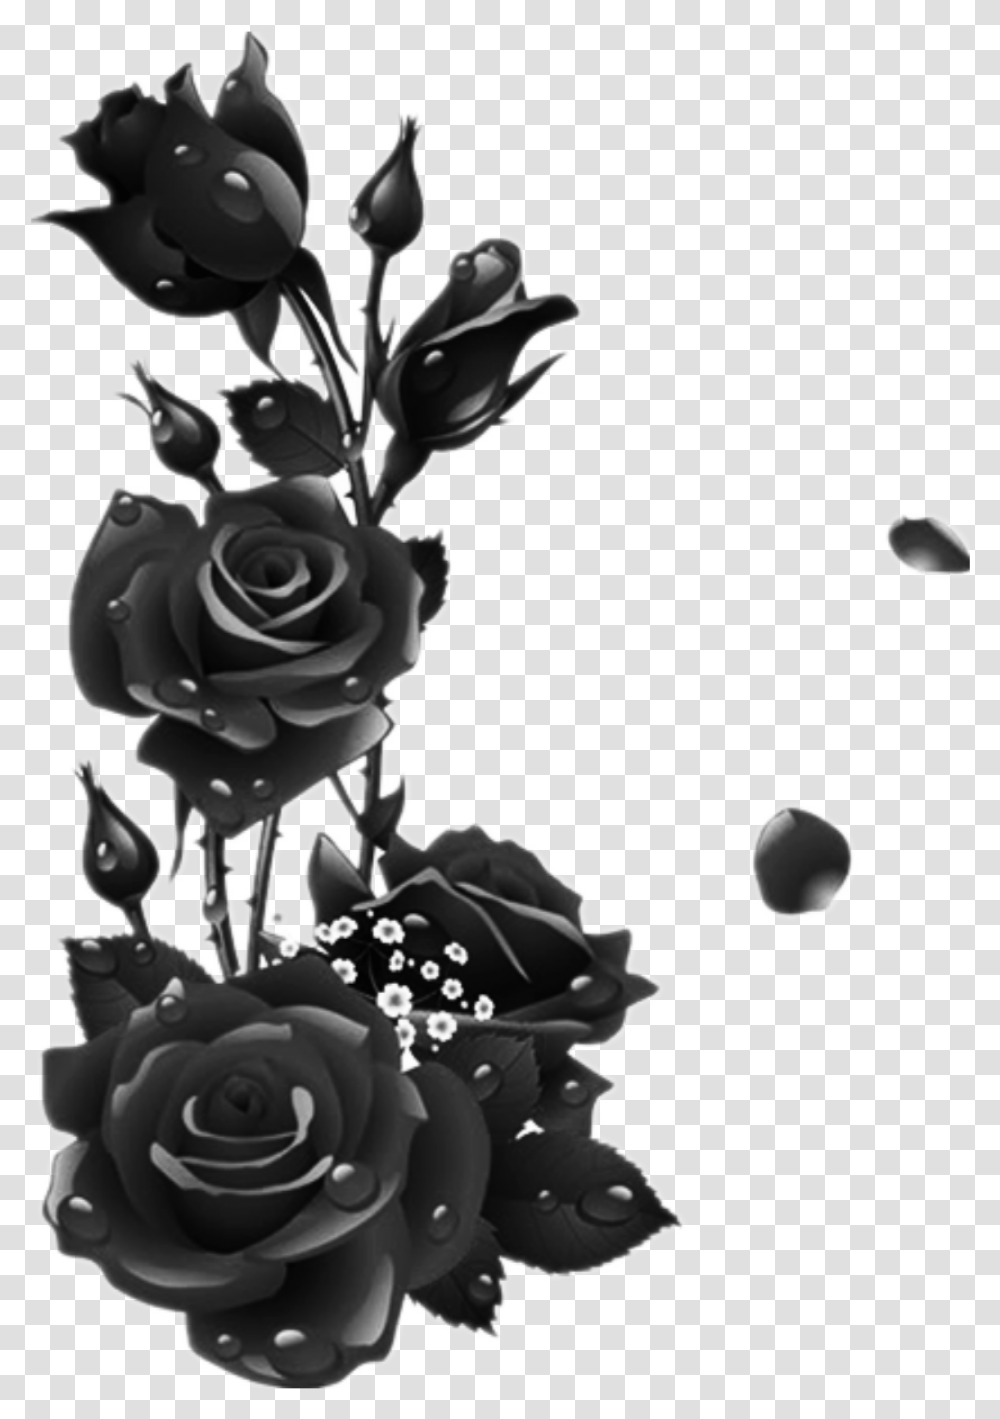 Roses Black Rose Leaves Garden Drops Black Rose Frame, Plant, Flower, Blossom Transparent Png